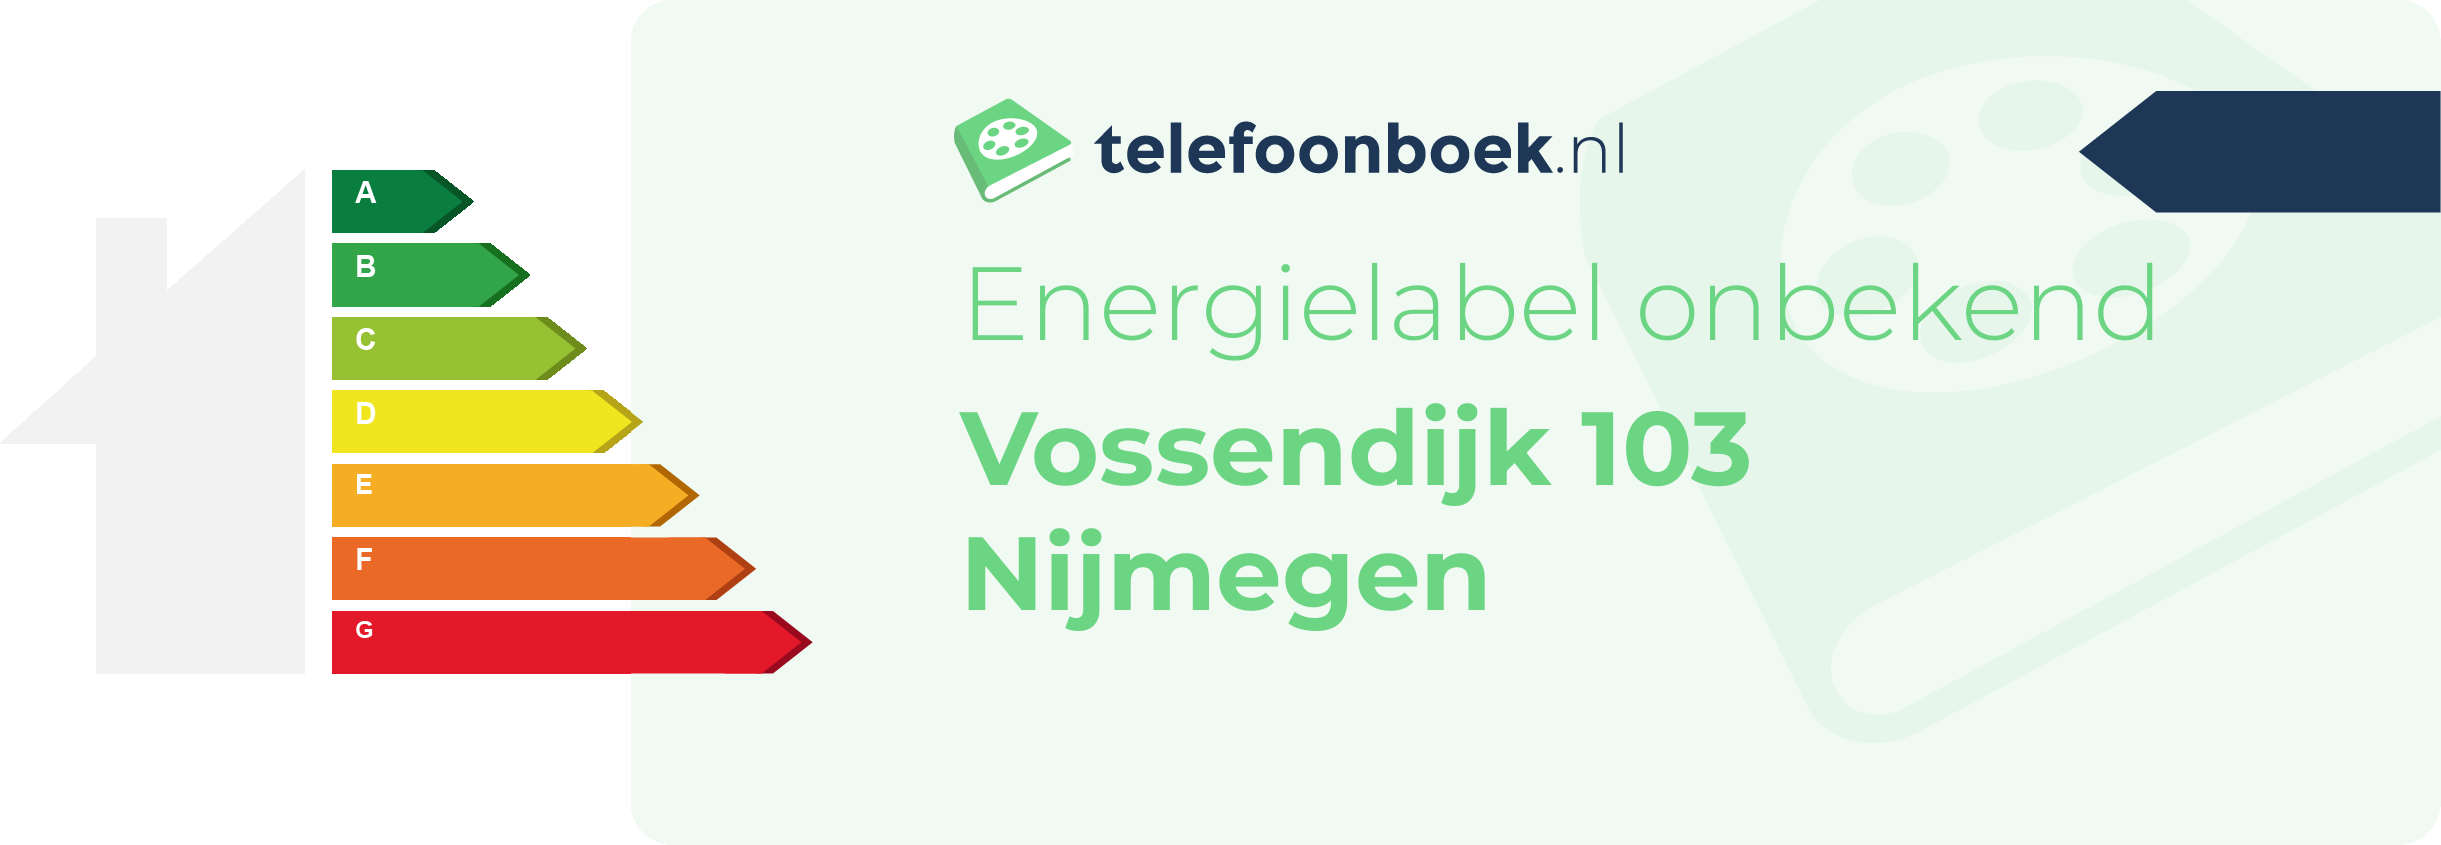 Energielabel Vossendijk 103 Nijmegen